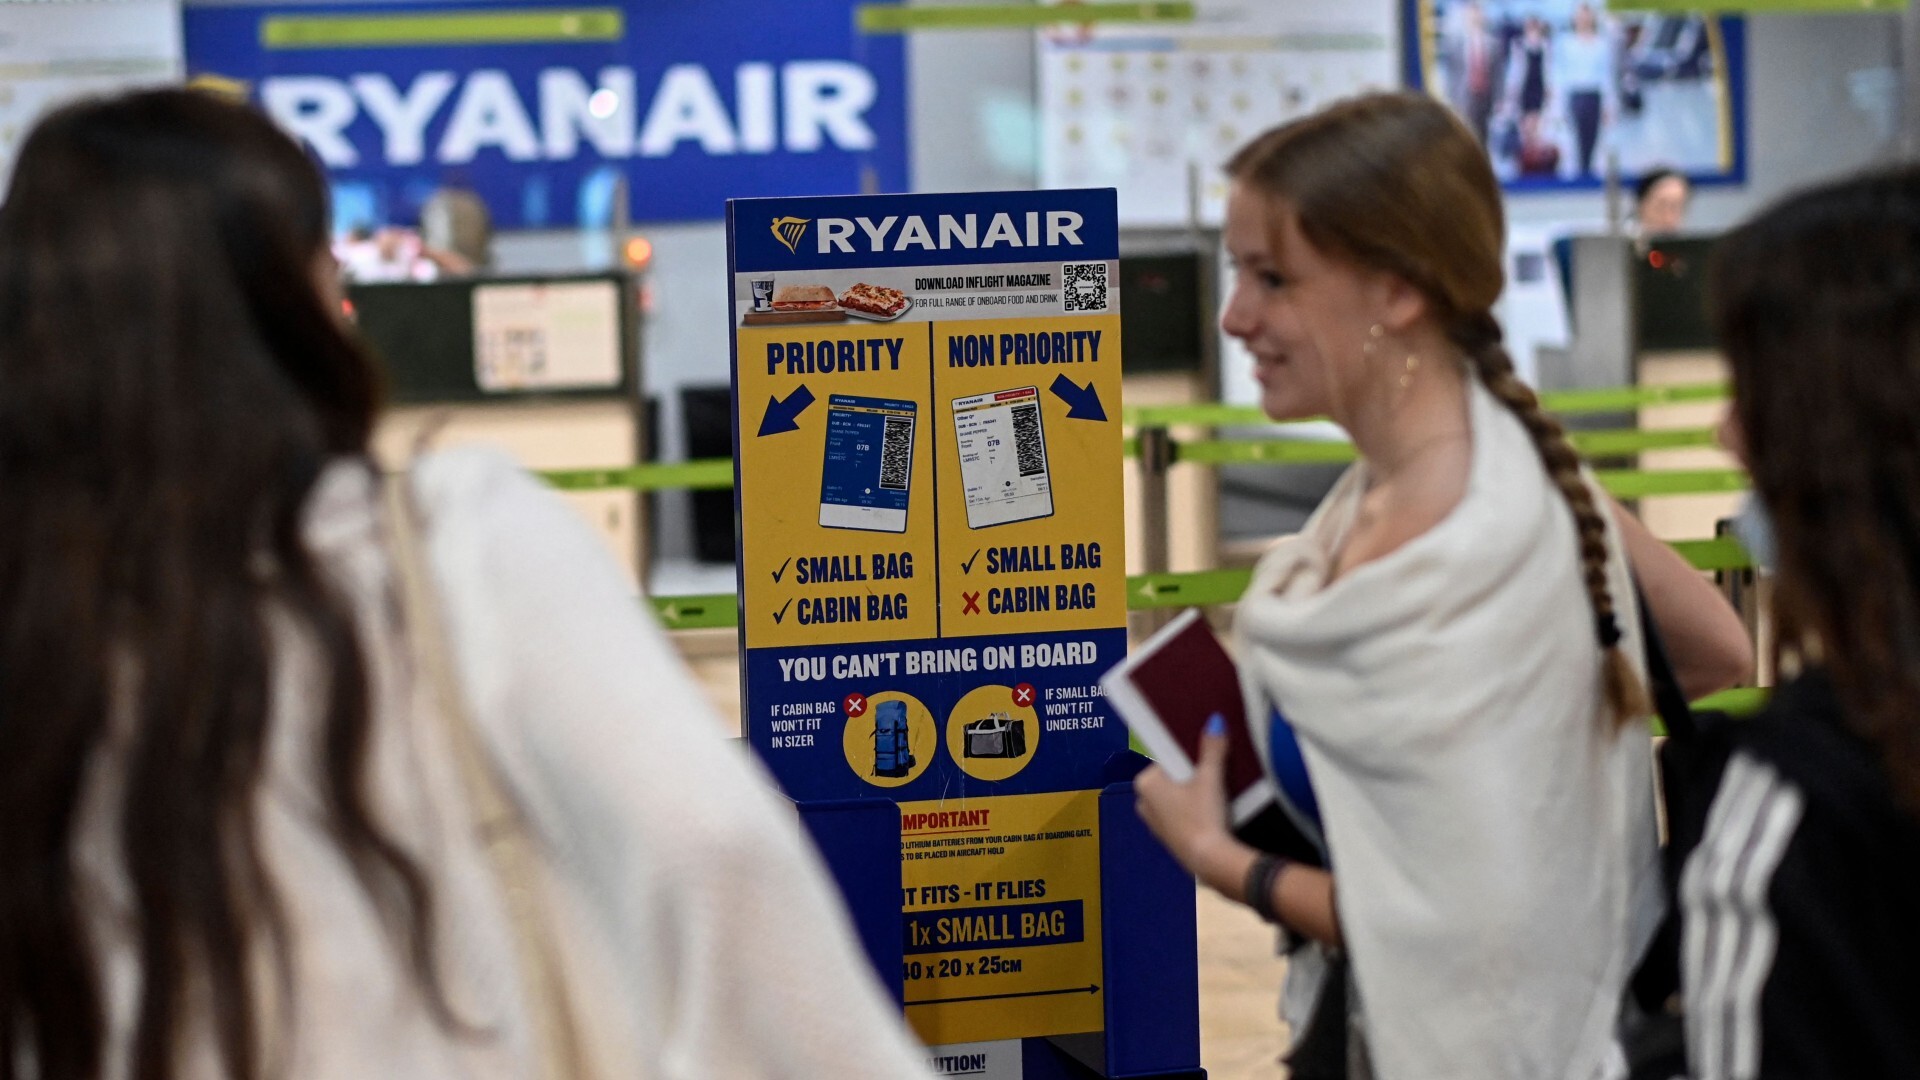 Gli attacchi EasyJet e Ryanair continuano in piena ‘operazione in uscita’